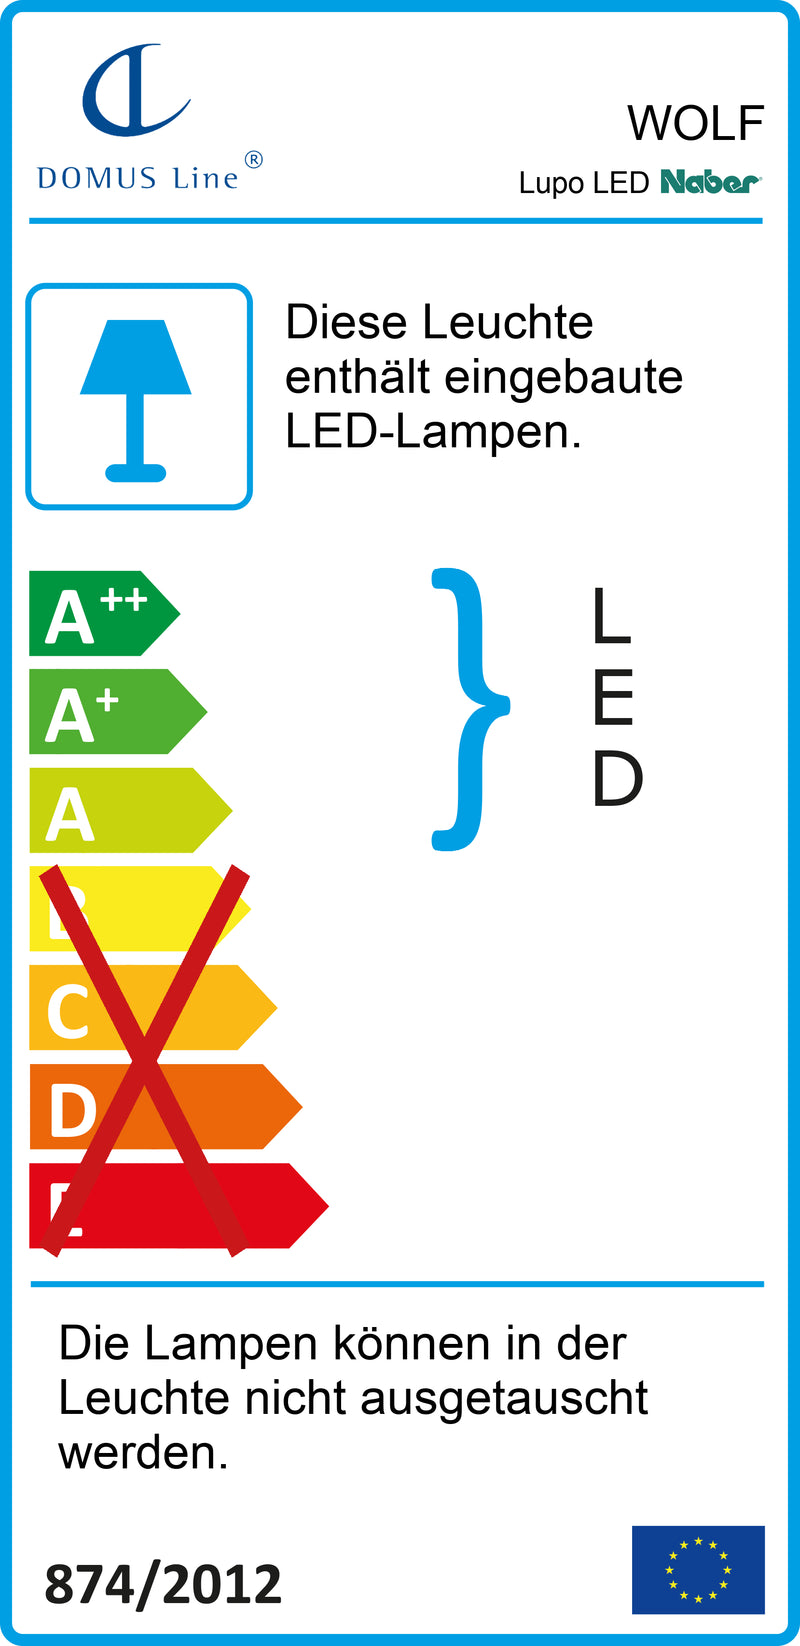 E-Label zu Zeichnung zu Lupo LED als Variante L 450 mm, 8 W, schwarz matt von Naber GmbH in der Kategorie Lichttechnik in Österreich auf conceptshop.at